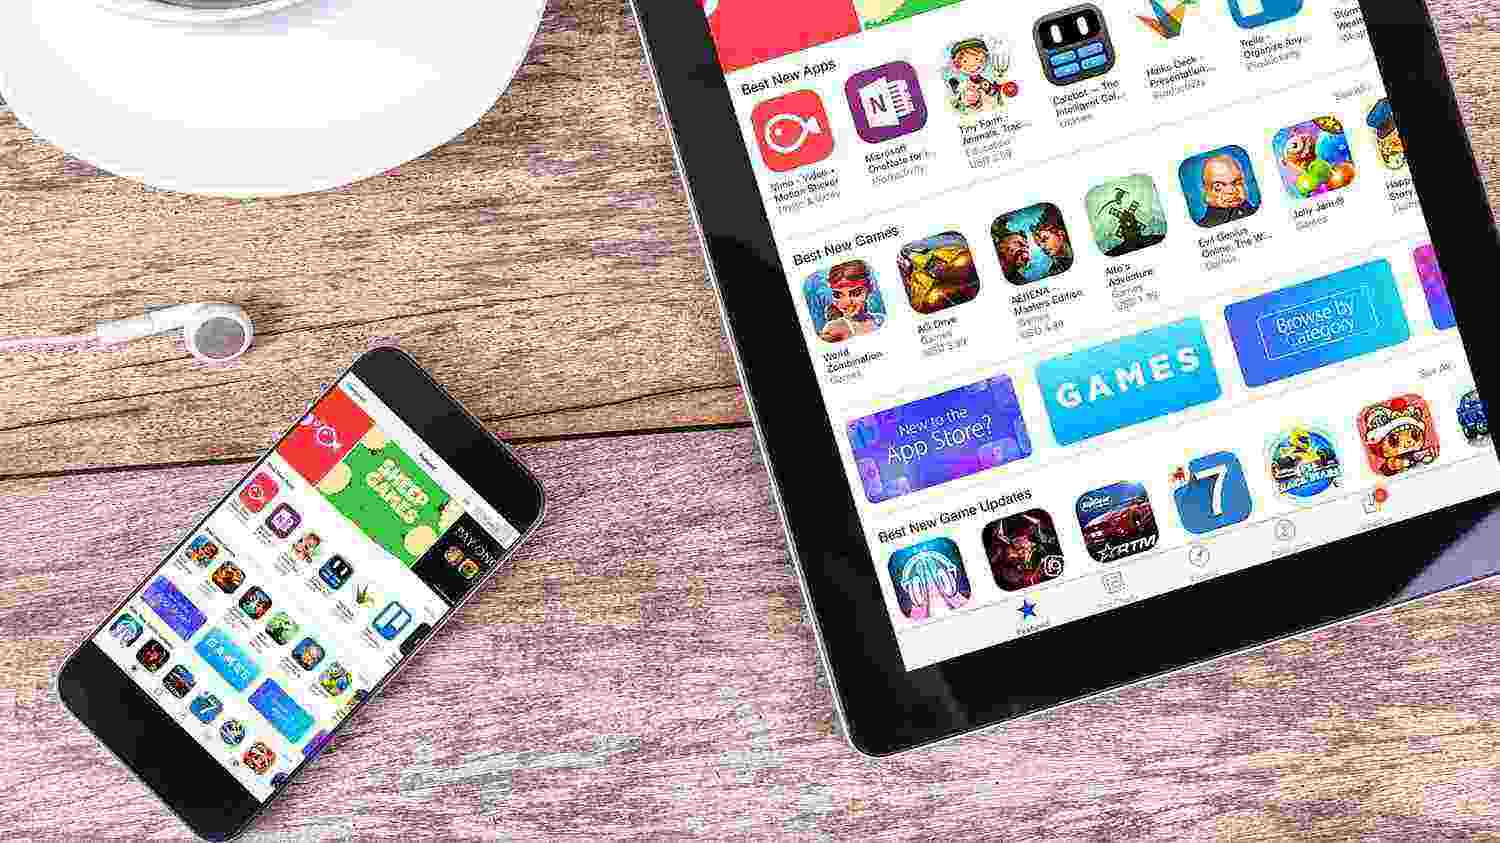 Лучшие игры и приложения 2016 года в App Store по версии Apple